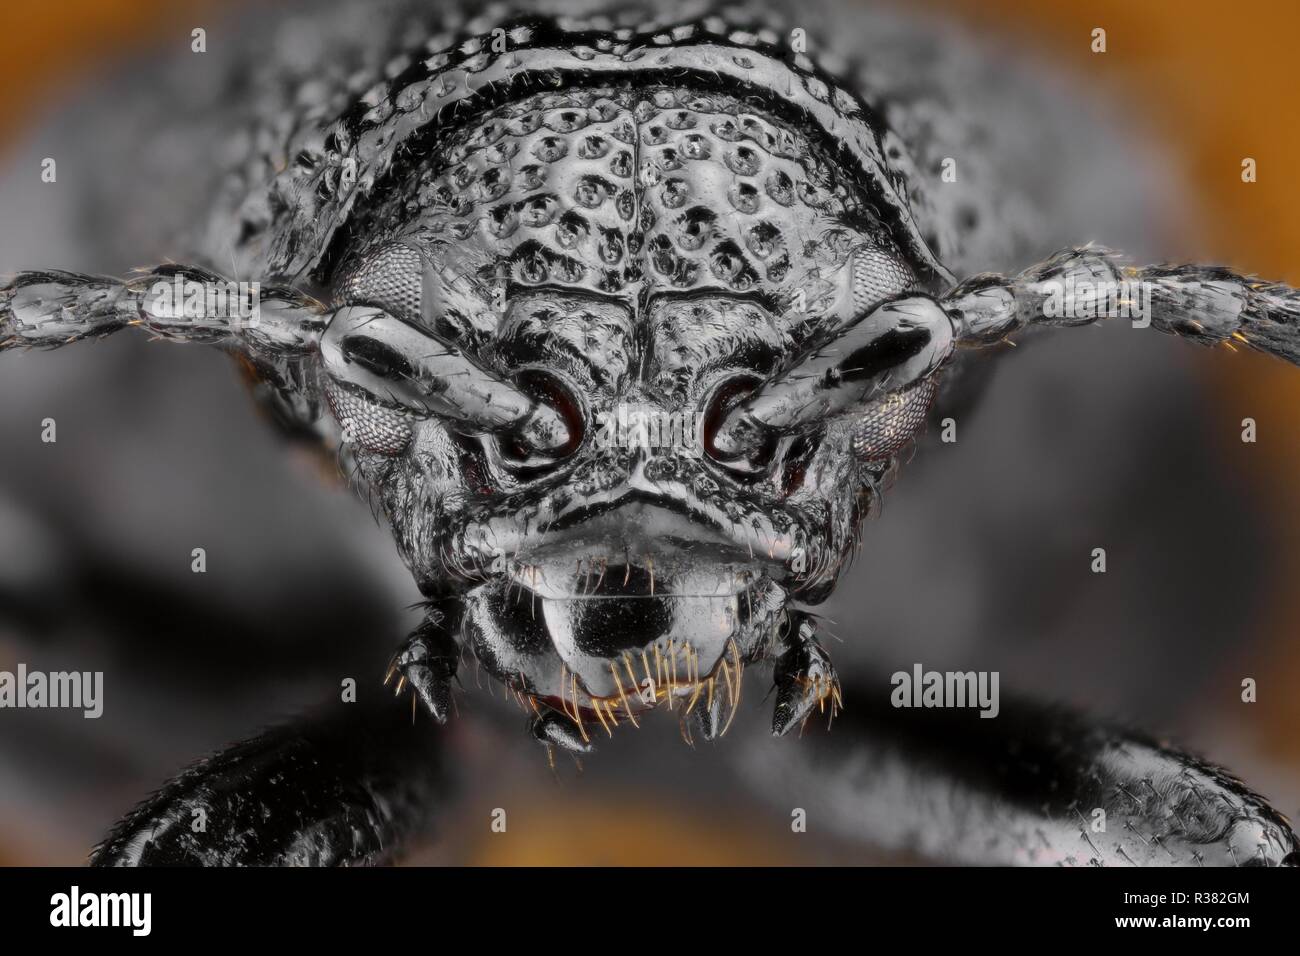 Extremadamente nítido y detallado estudio de un insecto jefe tomada con una lente macro apiladas de muchas imágenes en una foto muy fuerte. Foto de stock